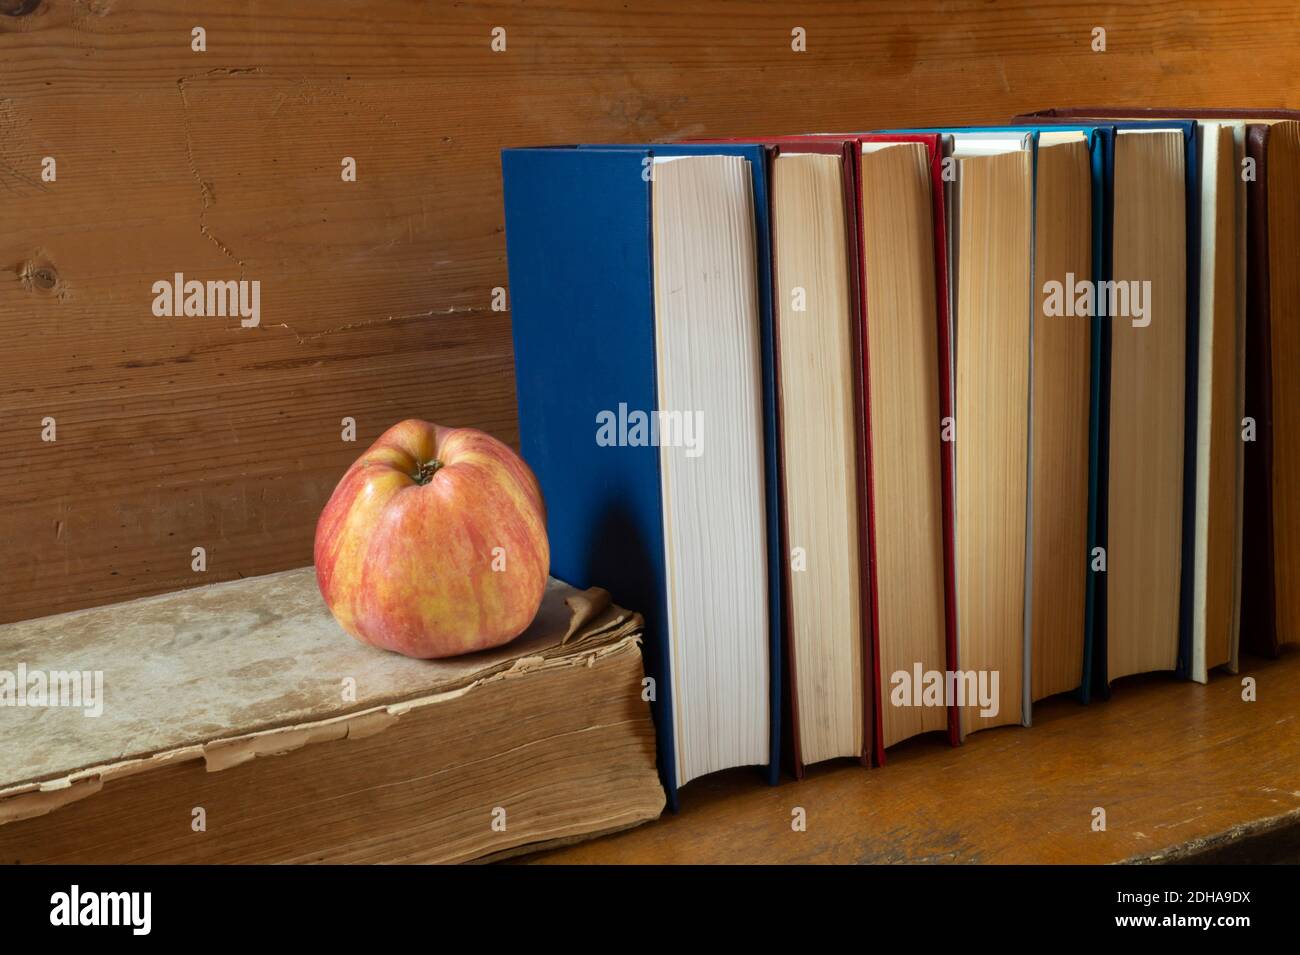 La mela rossa con il libro poggia su reggimento di legno. I soggetti in primo piano. Foto Stock